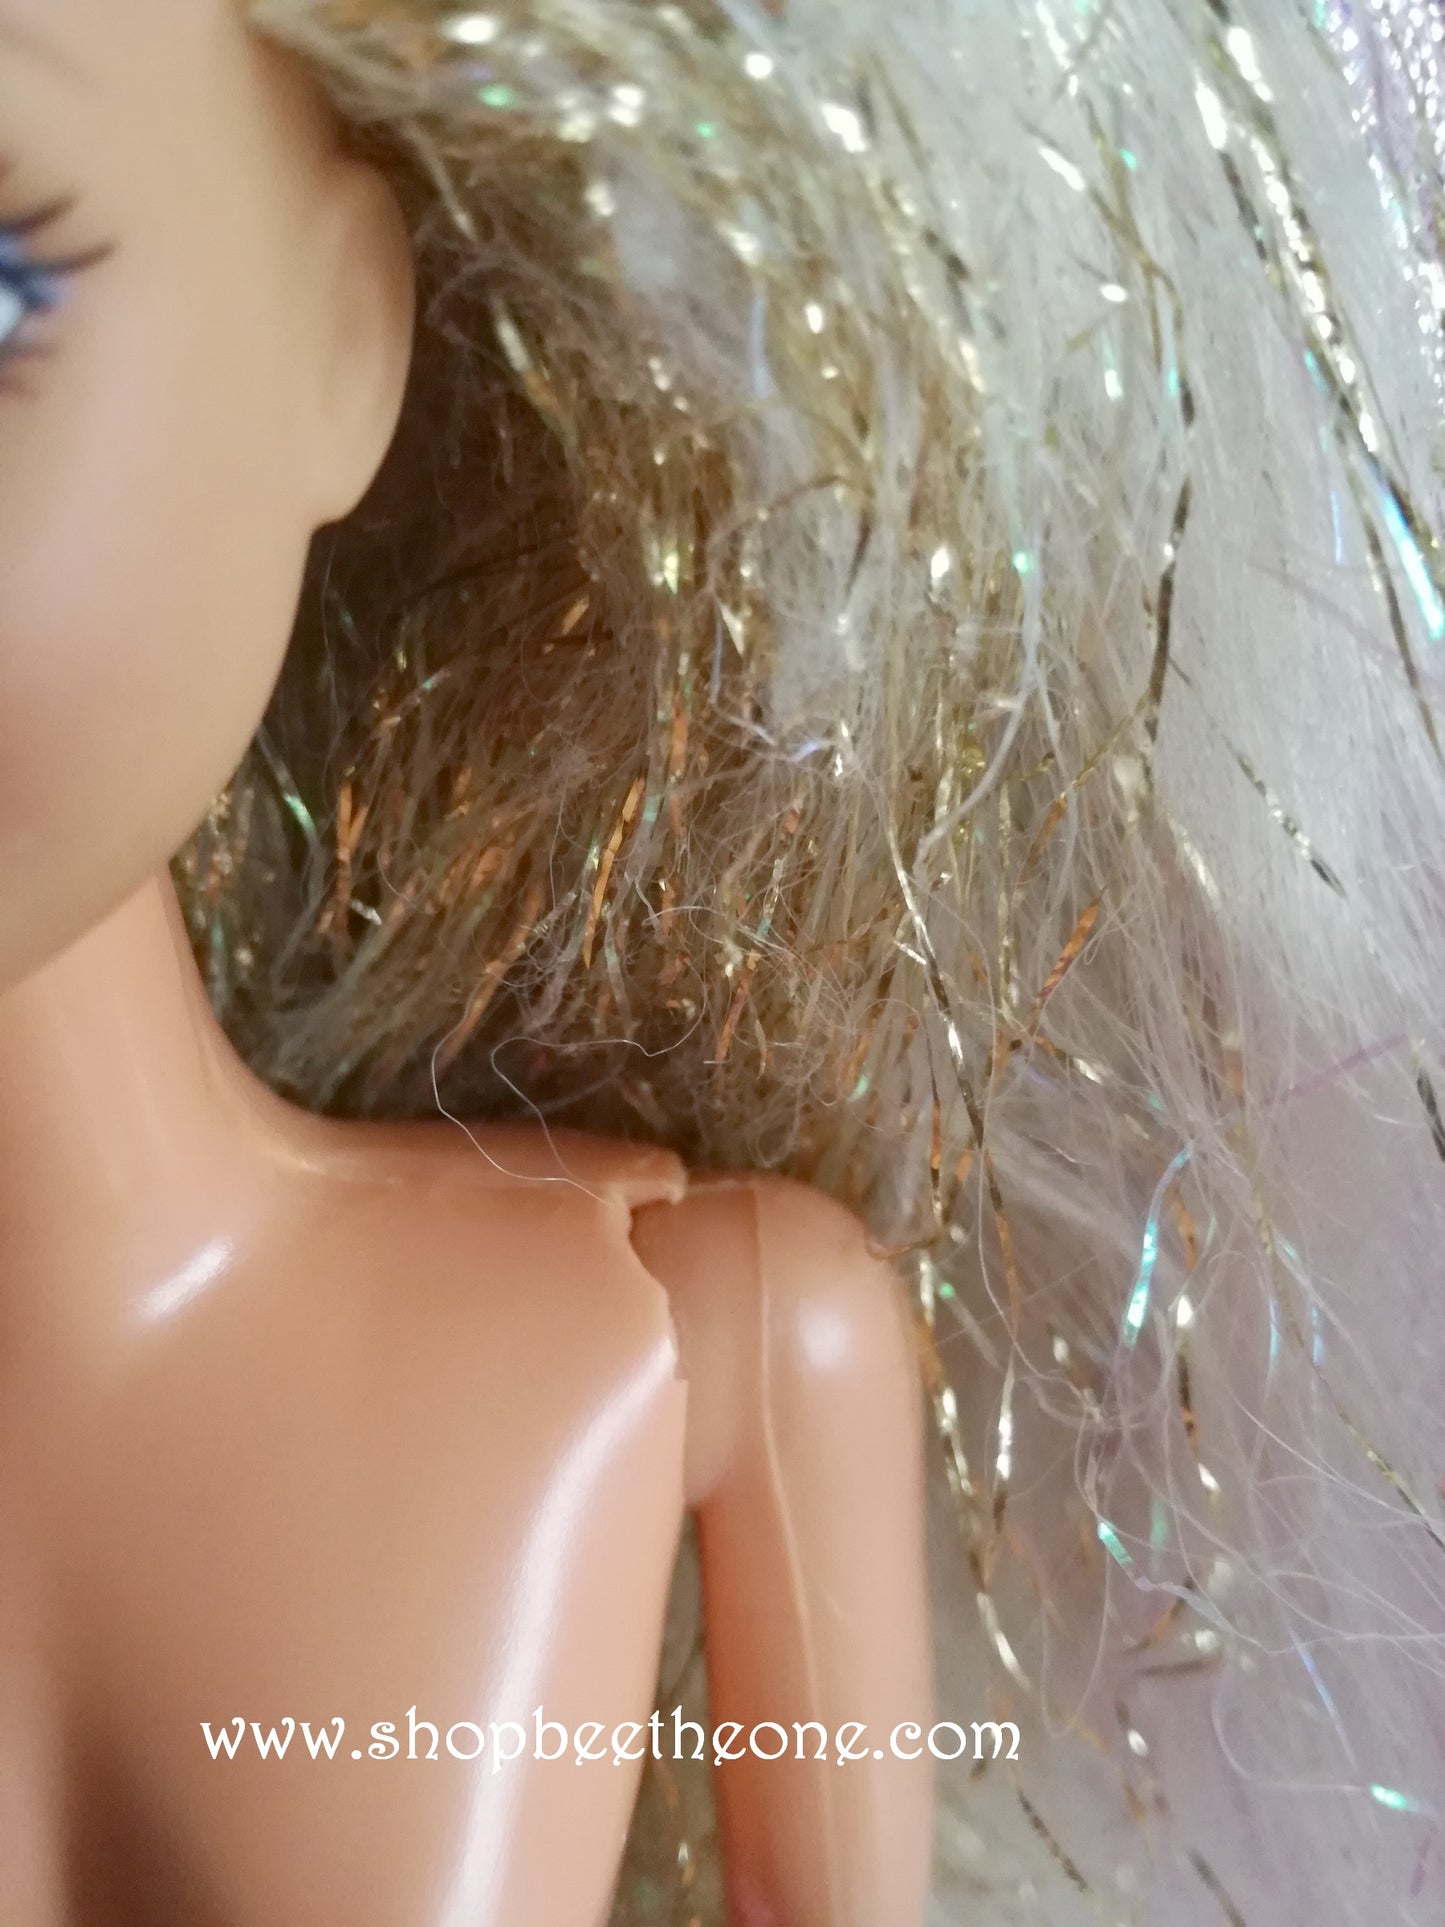 Sindy Chevelure d'ange (Fairy Hair) - Hasbro 1996 - Poupée nue